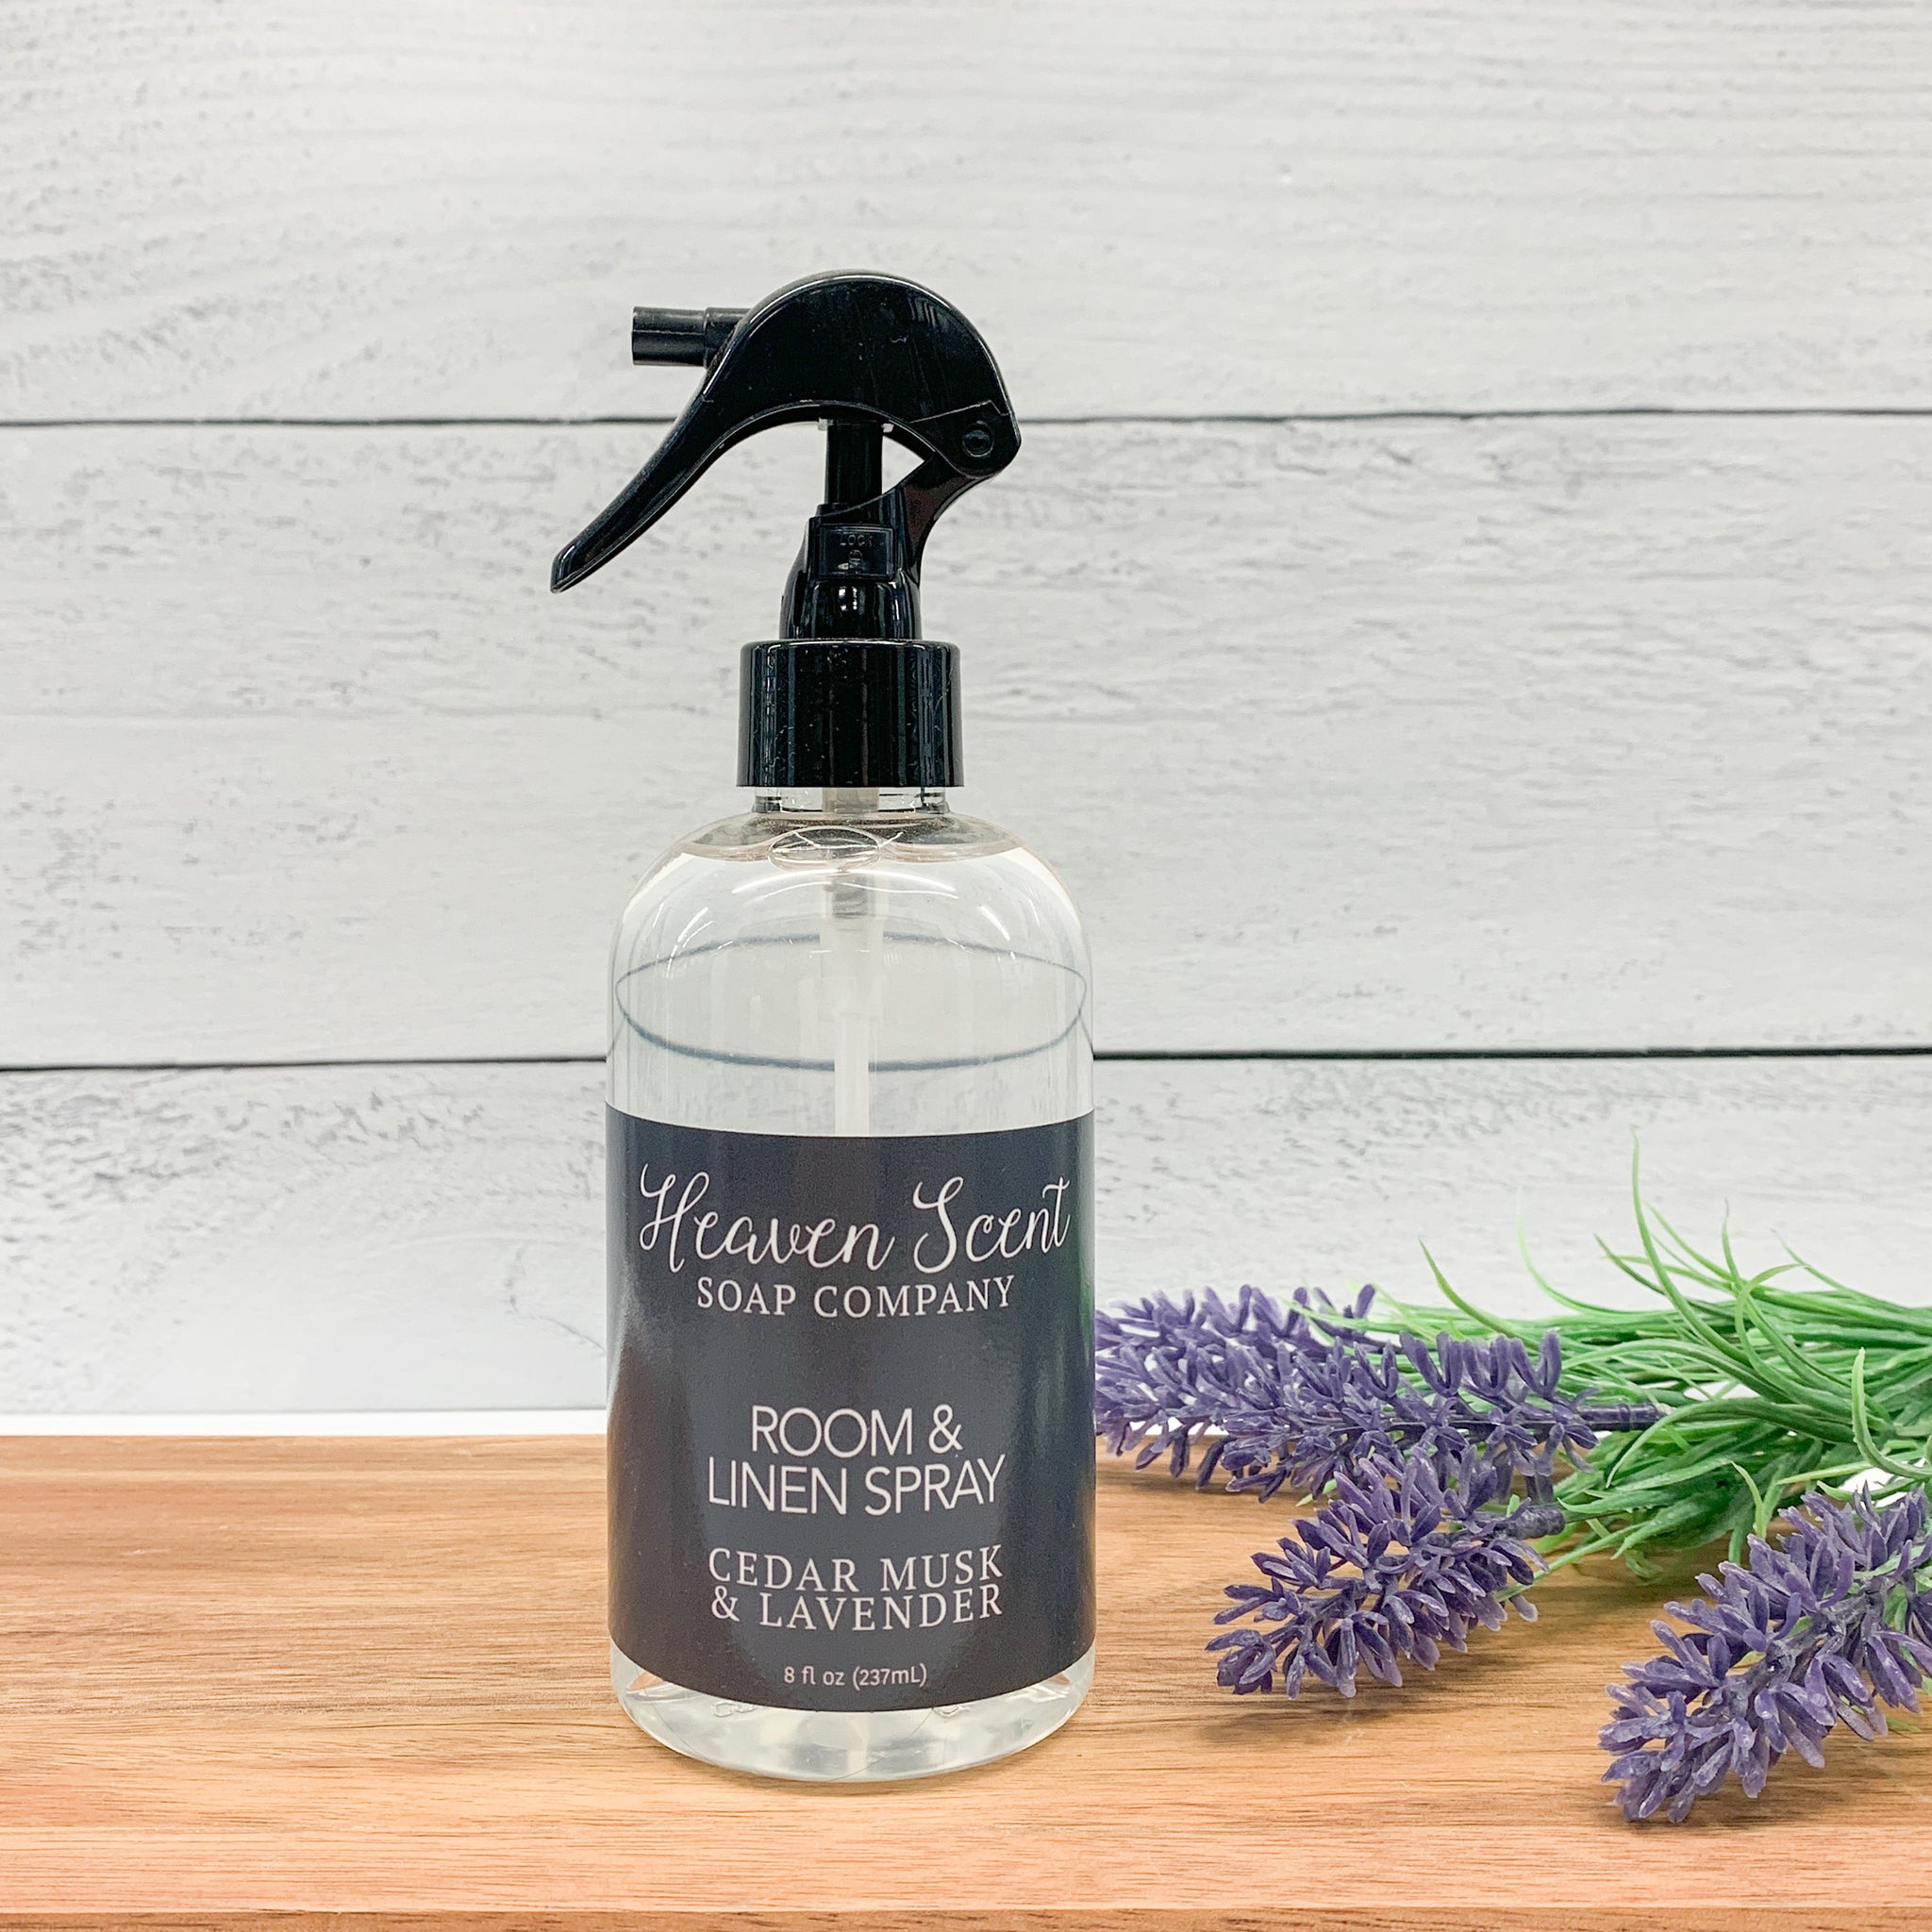 Cedar Musk & Lavender Room & Linen Spray